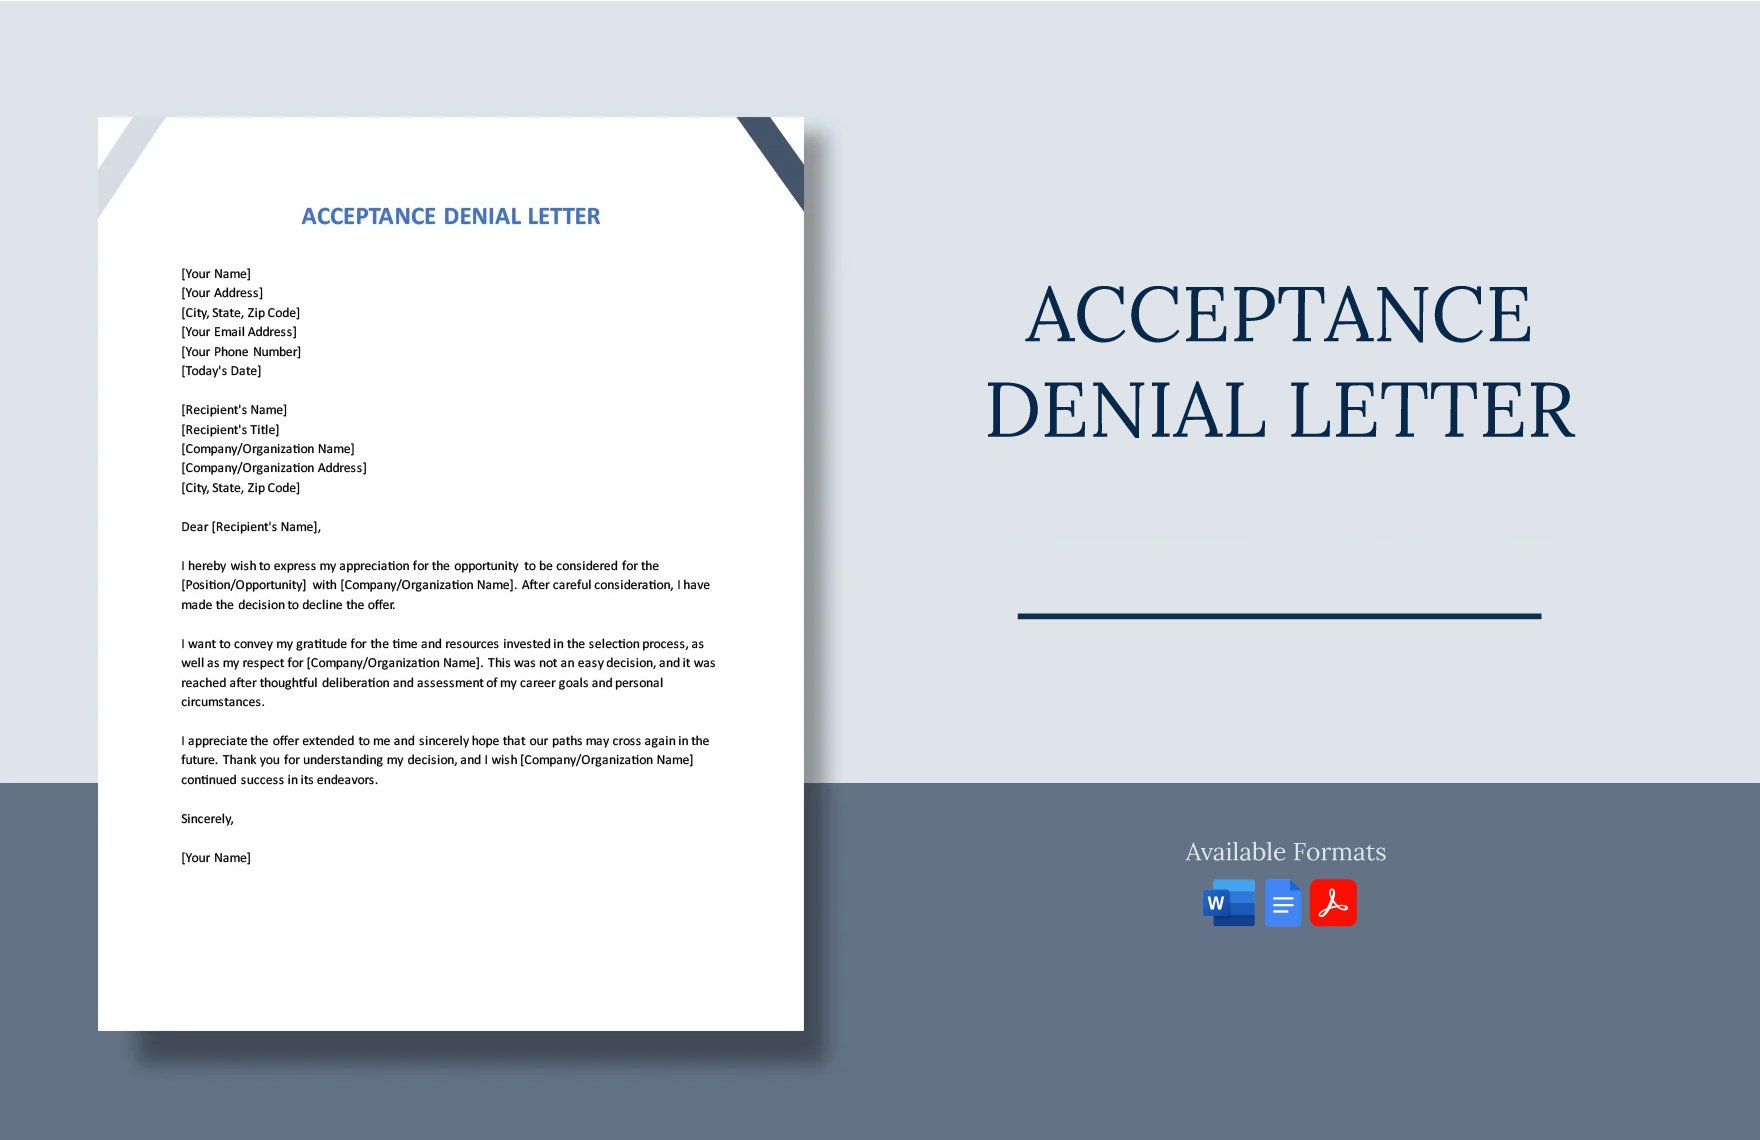 Acceptance Denial Letter